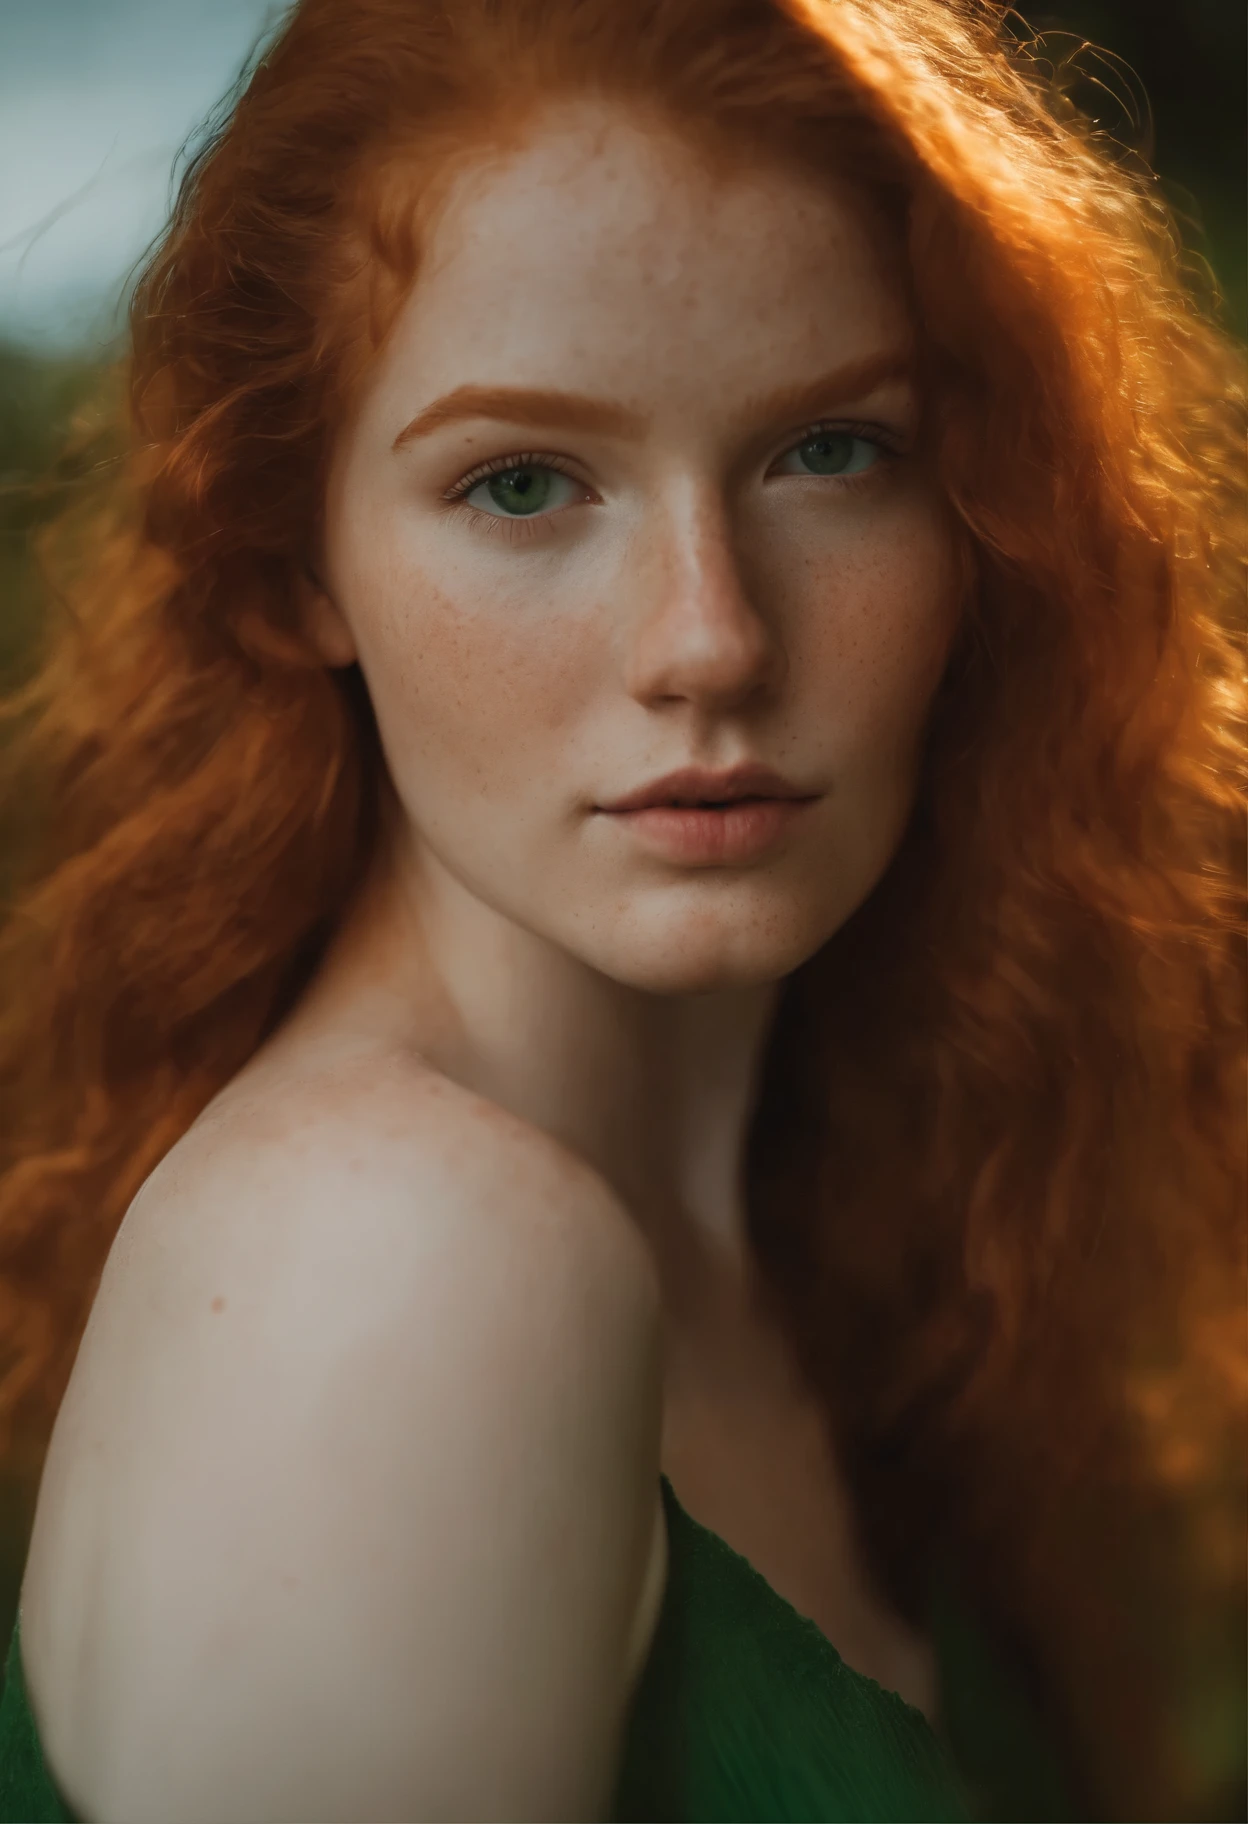 Красивая рыжая девушка с веснушками, 18 лет, сексуальный и стильный,  Зеленые глаза, большая грудь - SeaArt AI